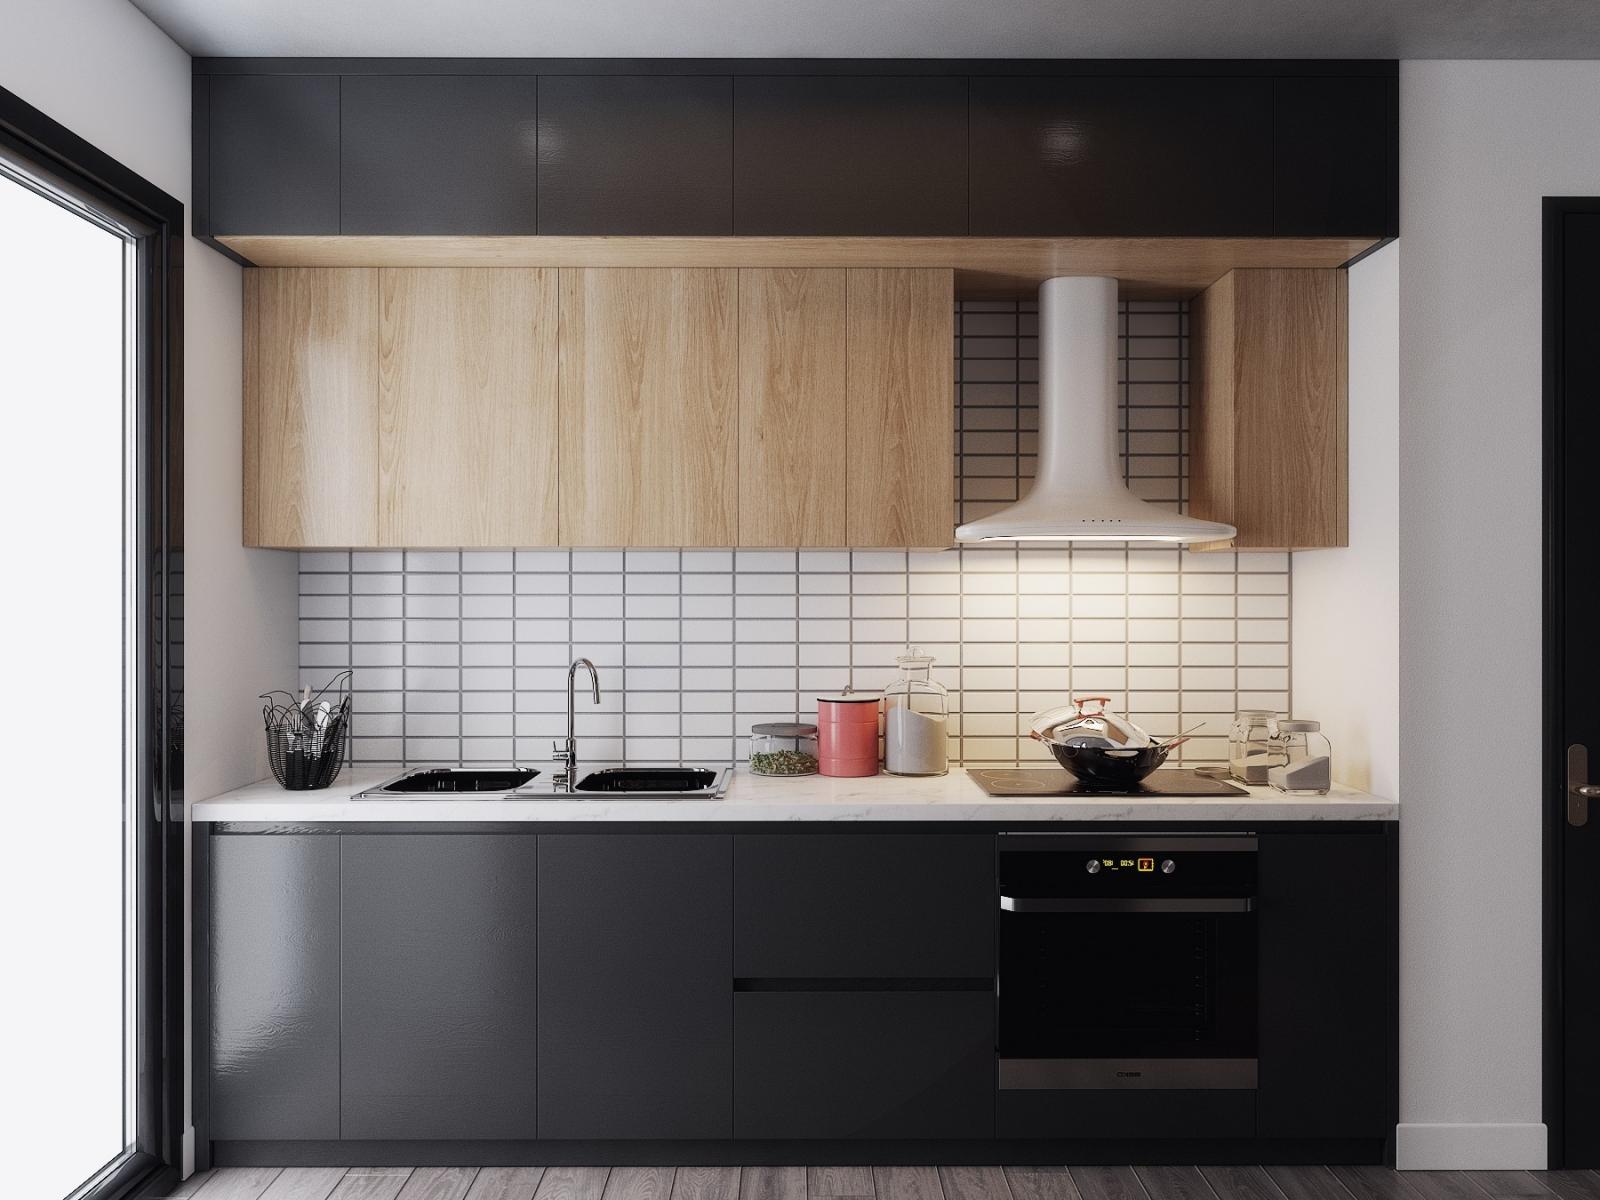 hình ảnh phòng bếp tối giản với tủ bếp trên bằng gỗ, tường chắn màu trắng, tủ dưới sơn đen tuyền huyền bí